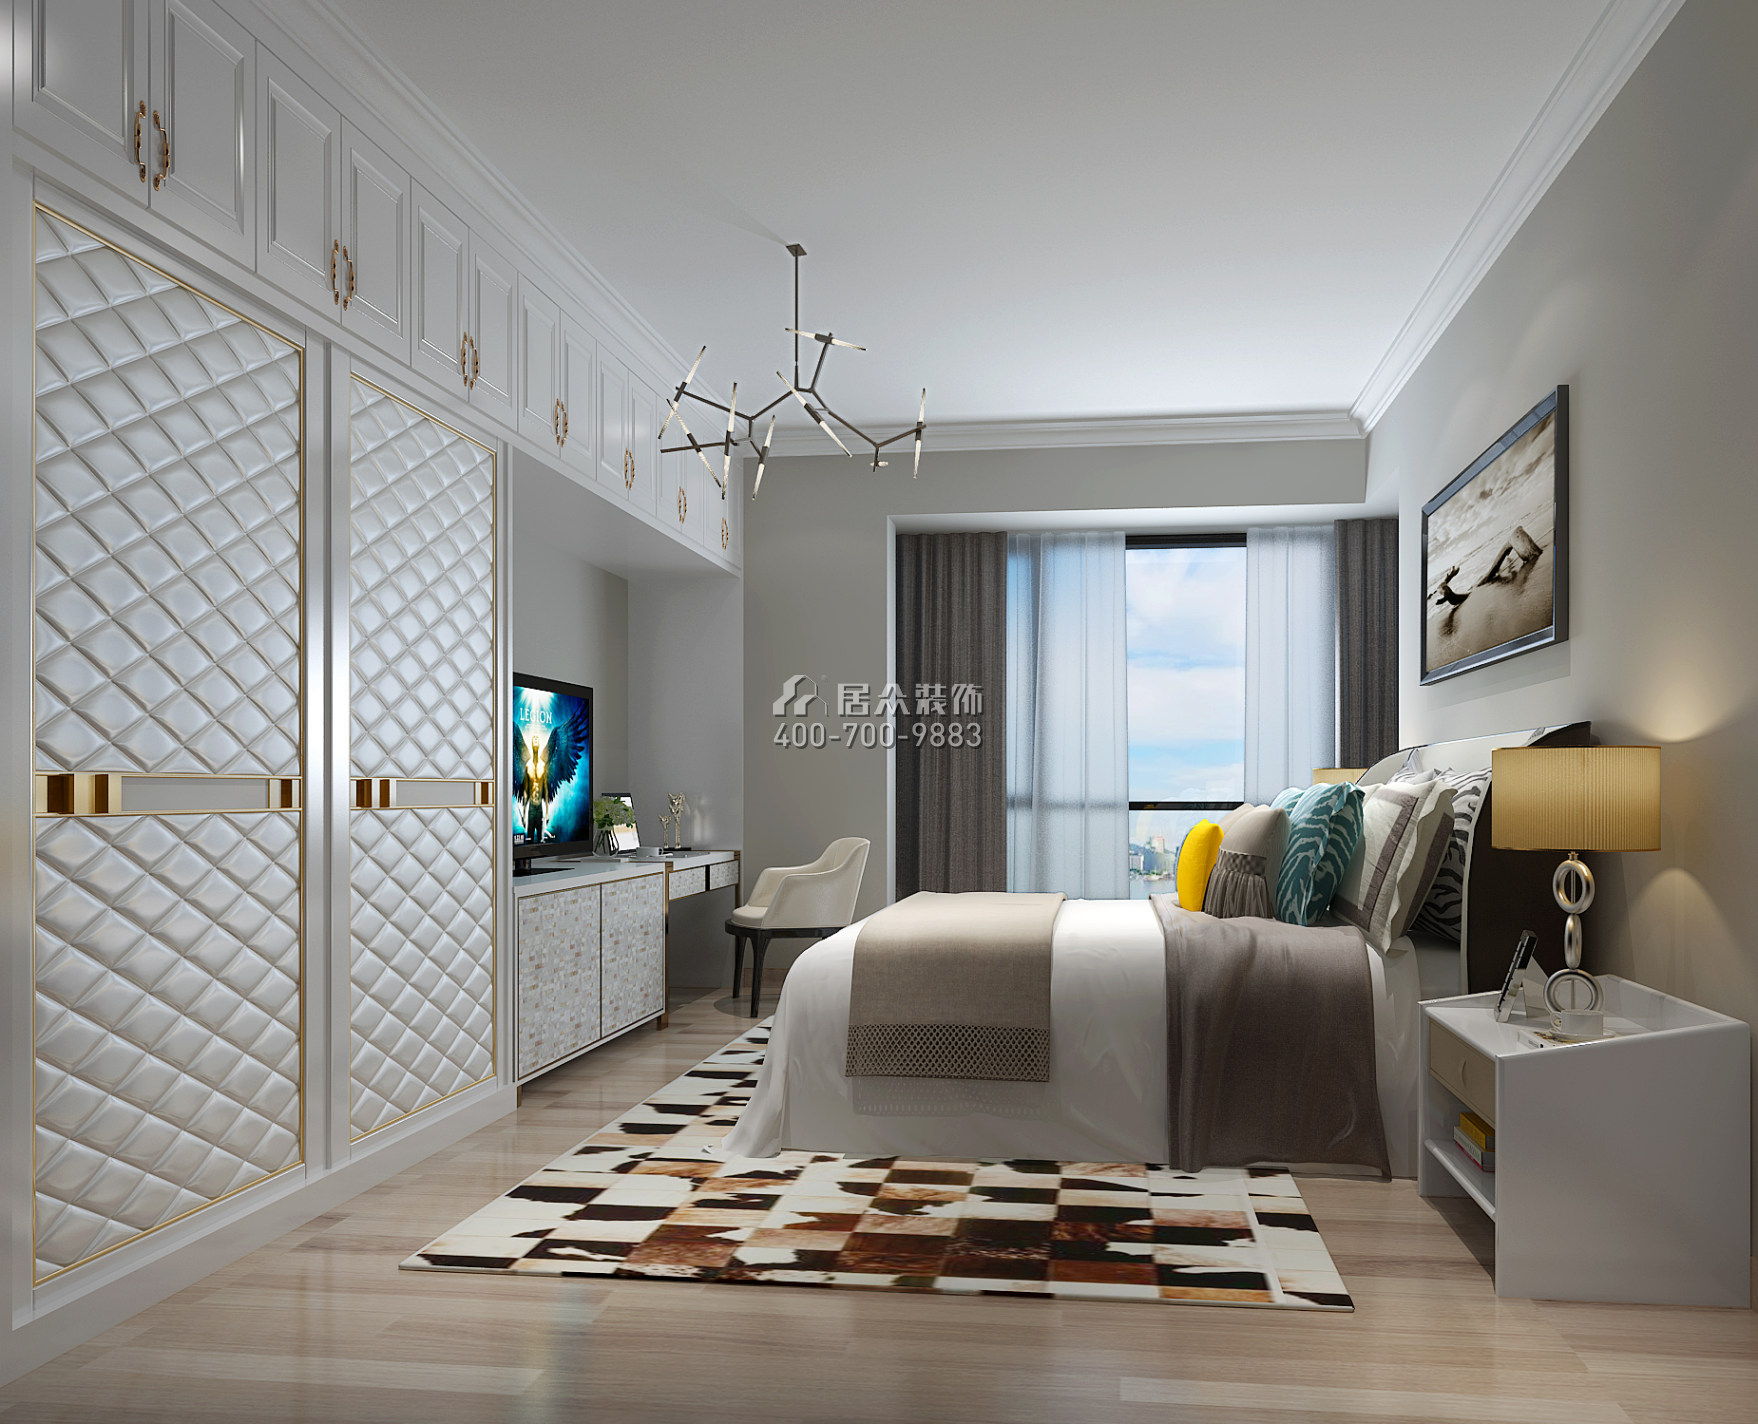 维港半岛142平方米现代简约风格平层户型卧室装修效果图